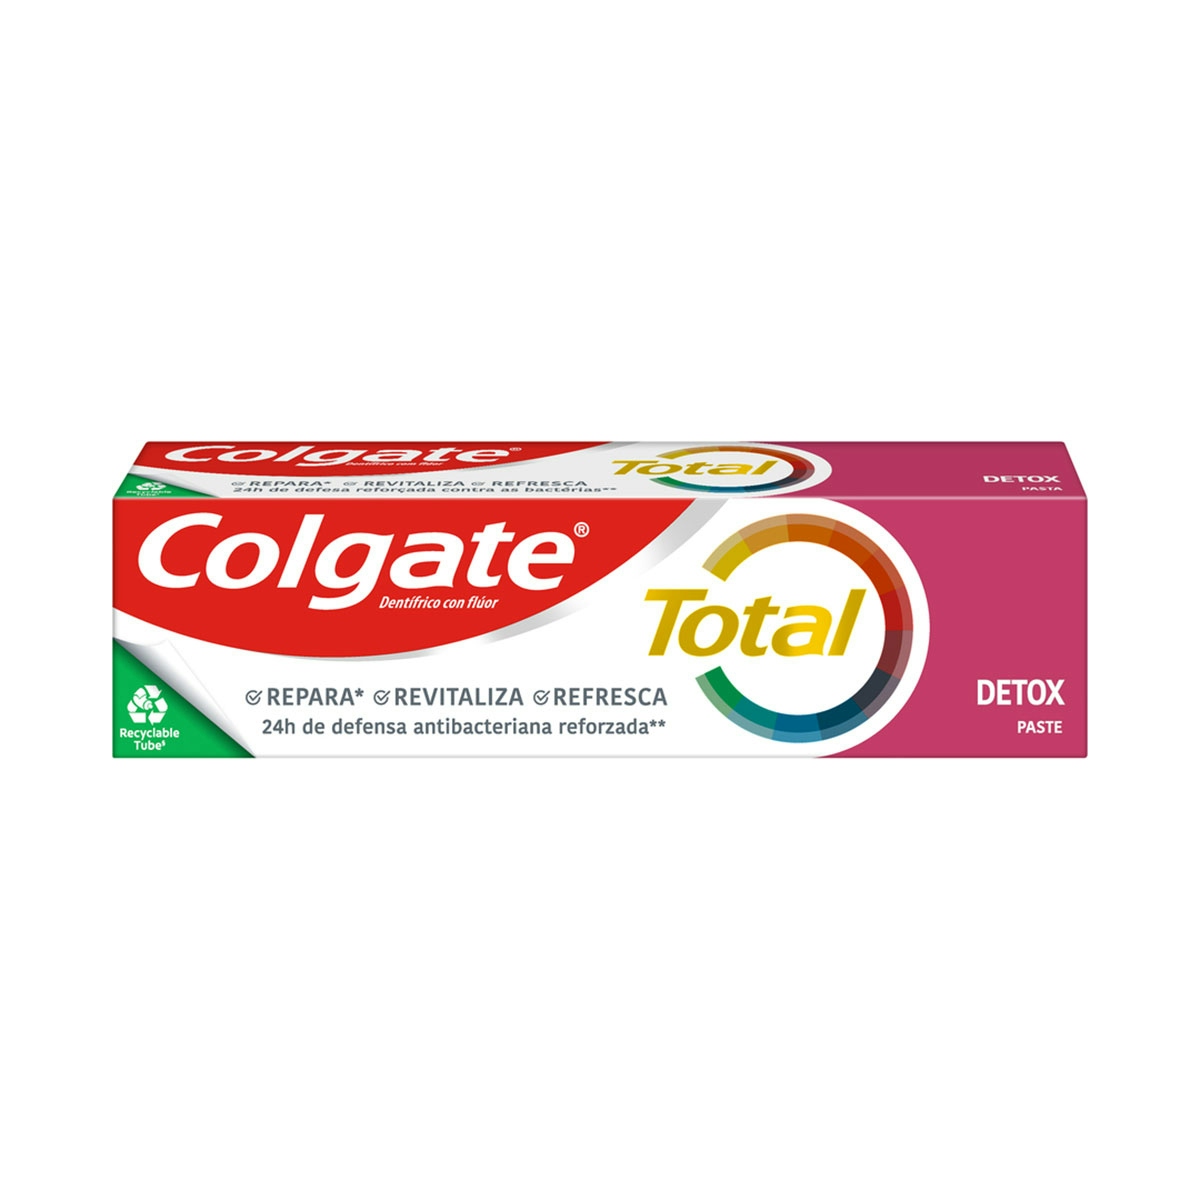 Pasta de dientes Colgate Total Detox 24h de protección completa 75ml